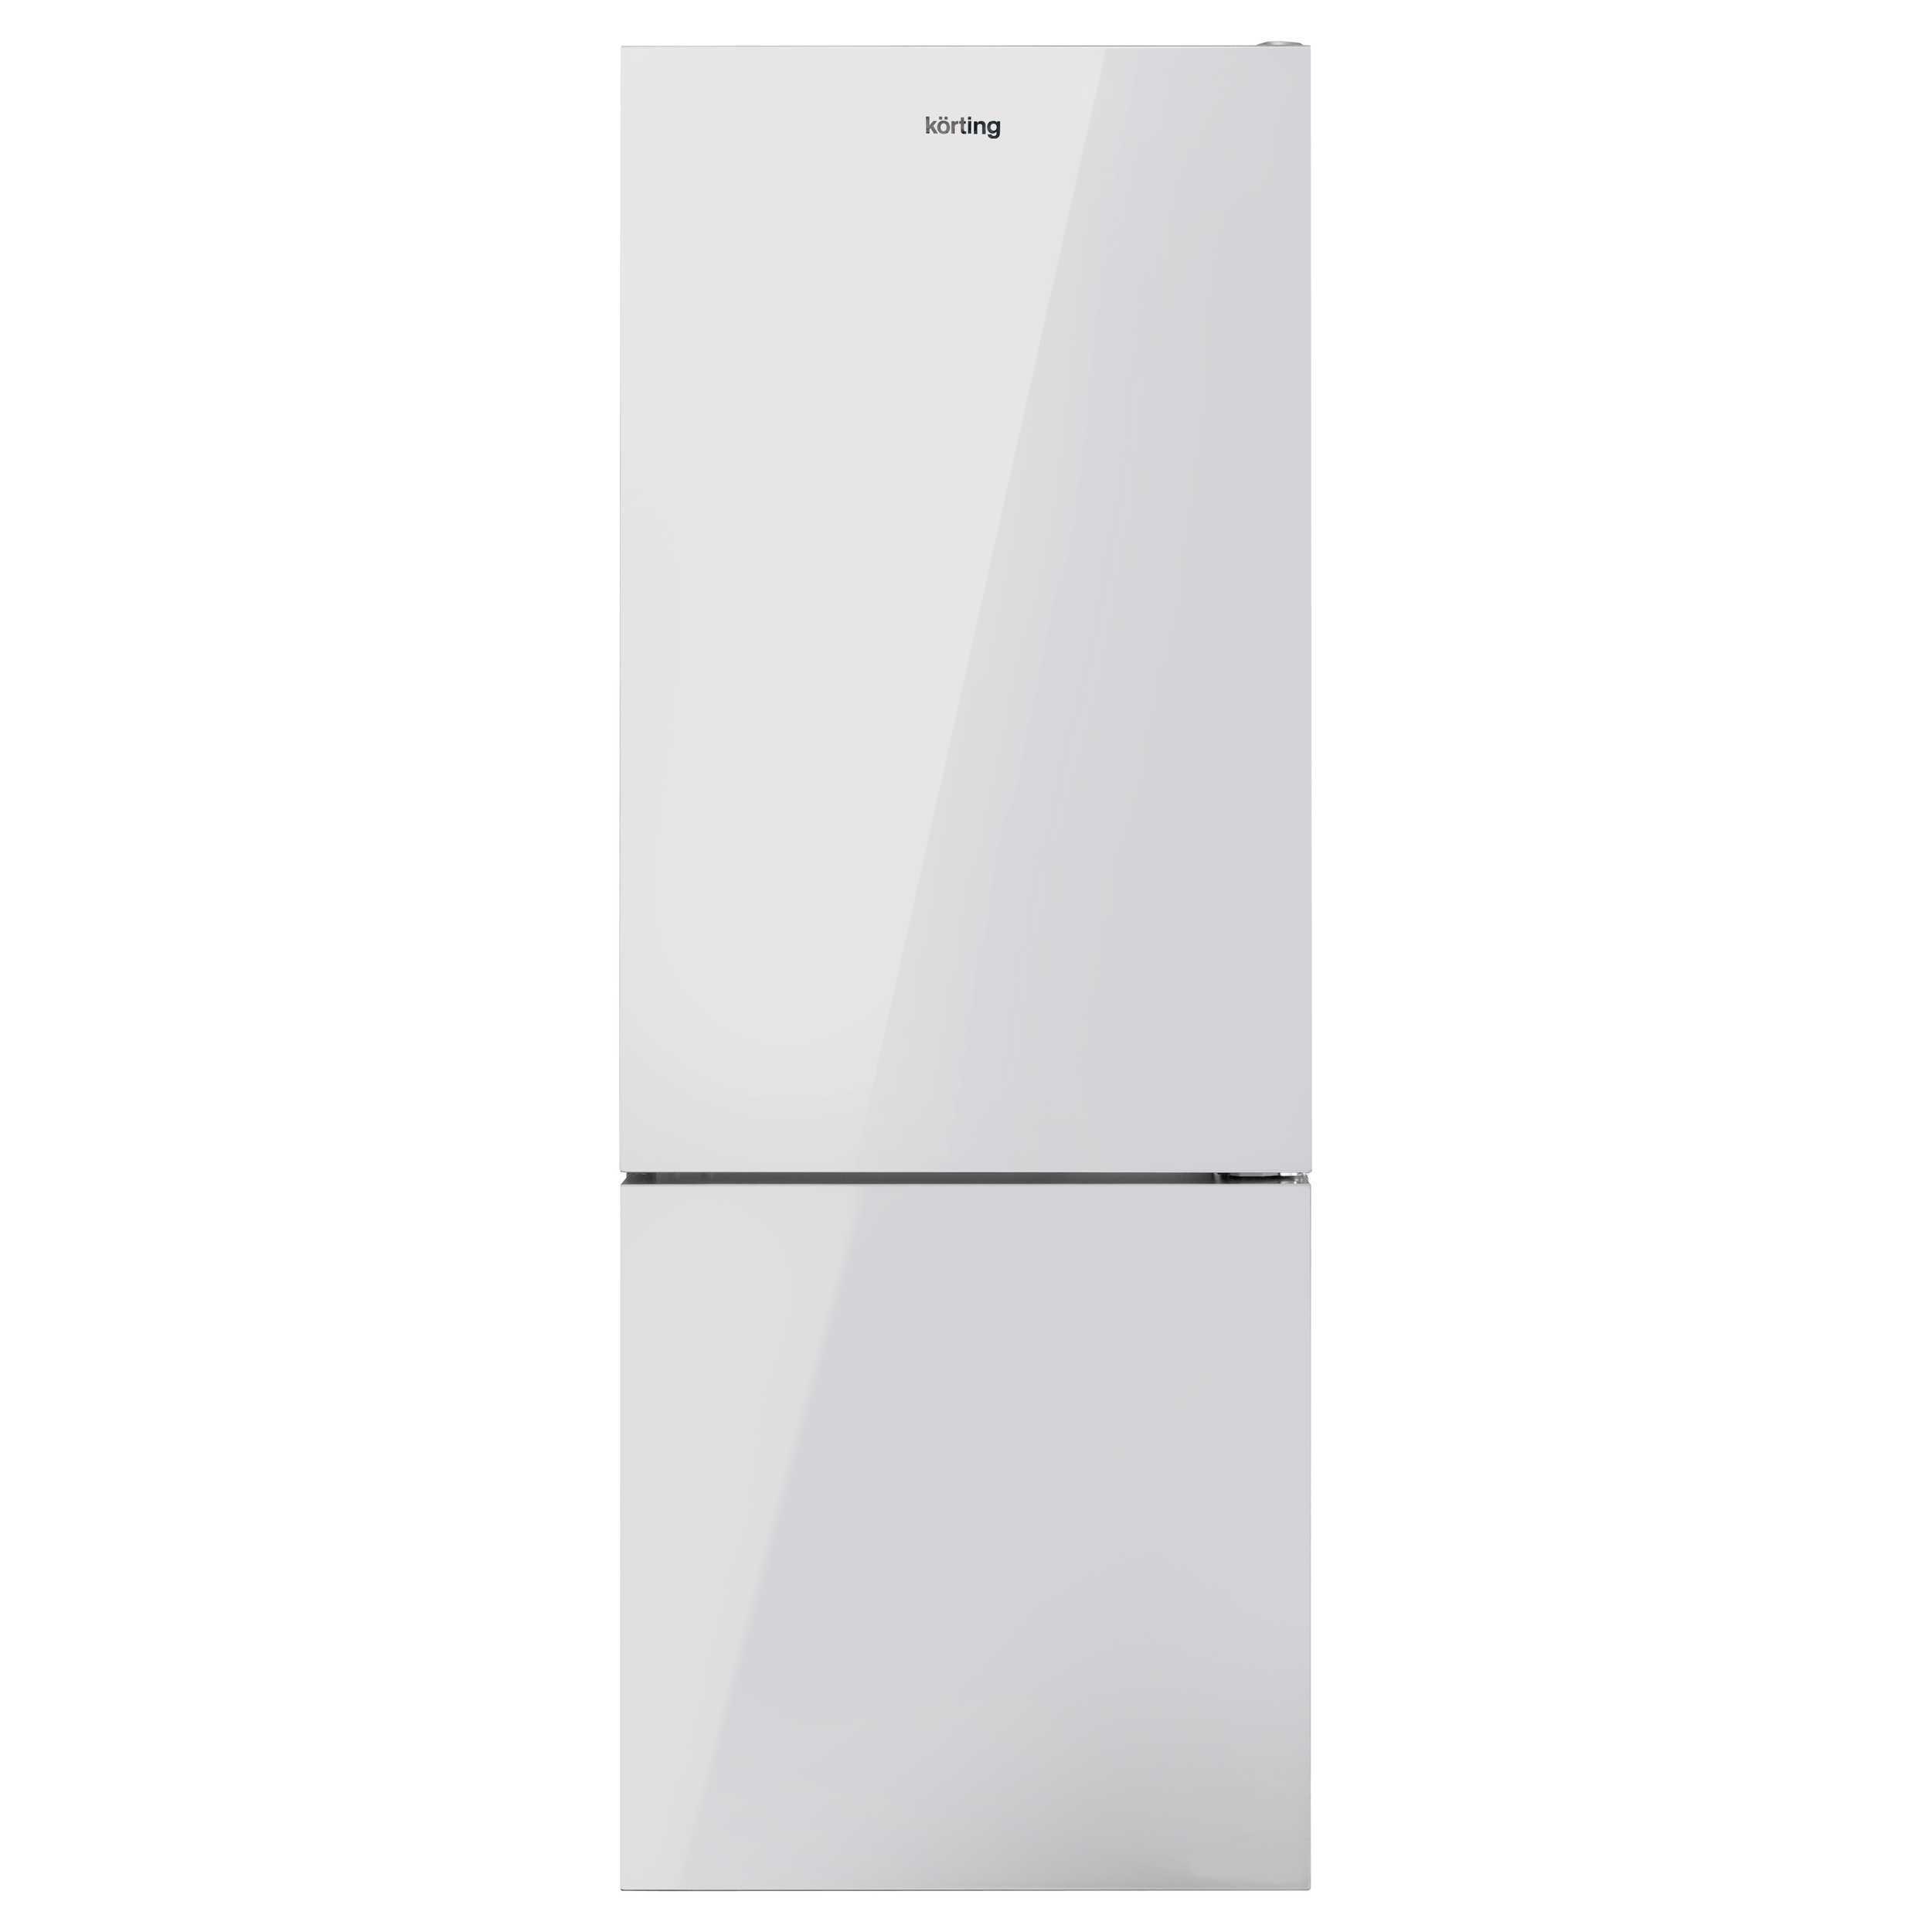 91076498 Отдельностоящий холодильник KNFC 71928 GW 70x192 см цвет белый STLM-0471491 KORTING